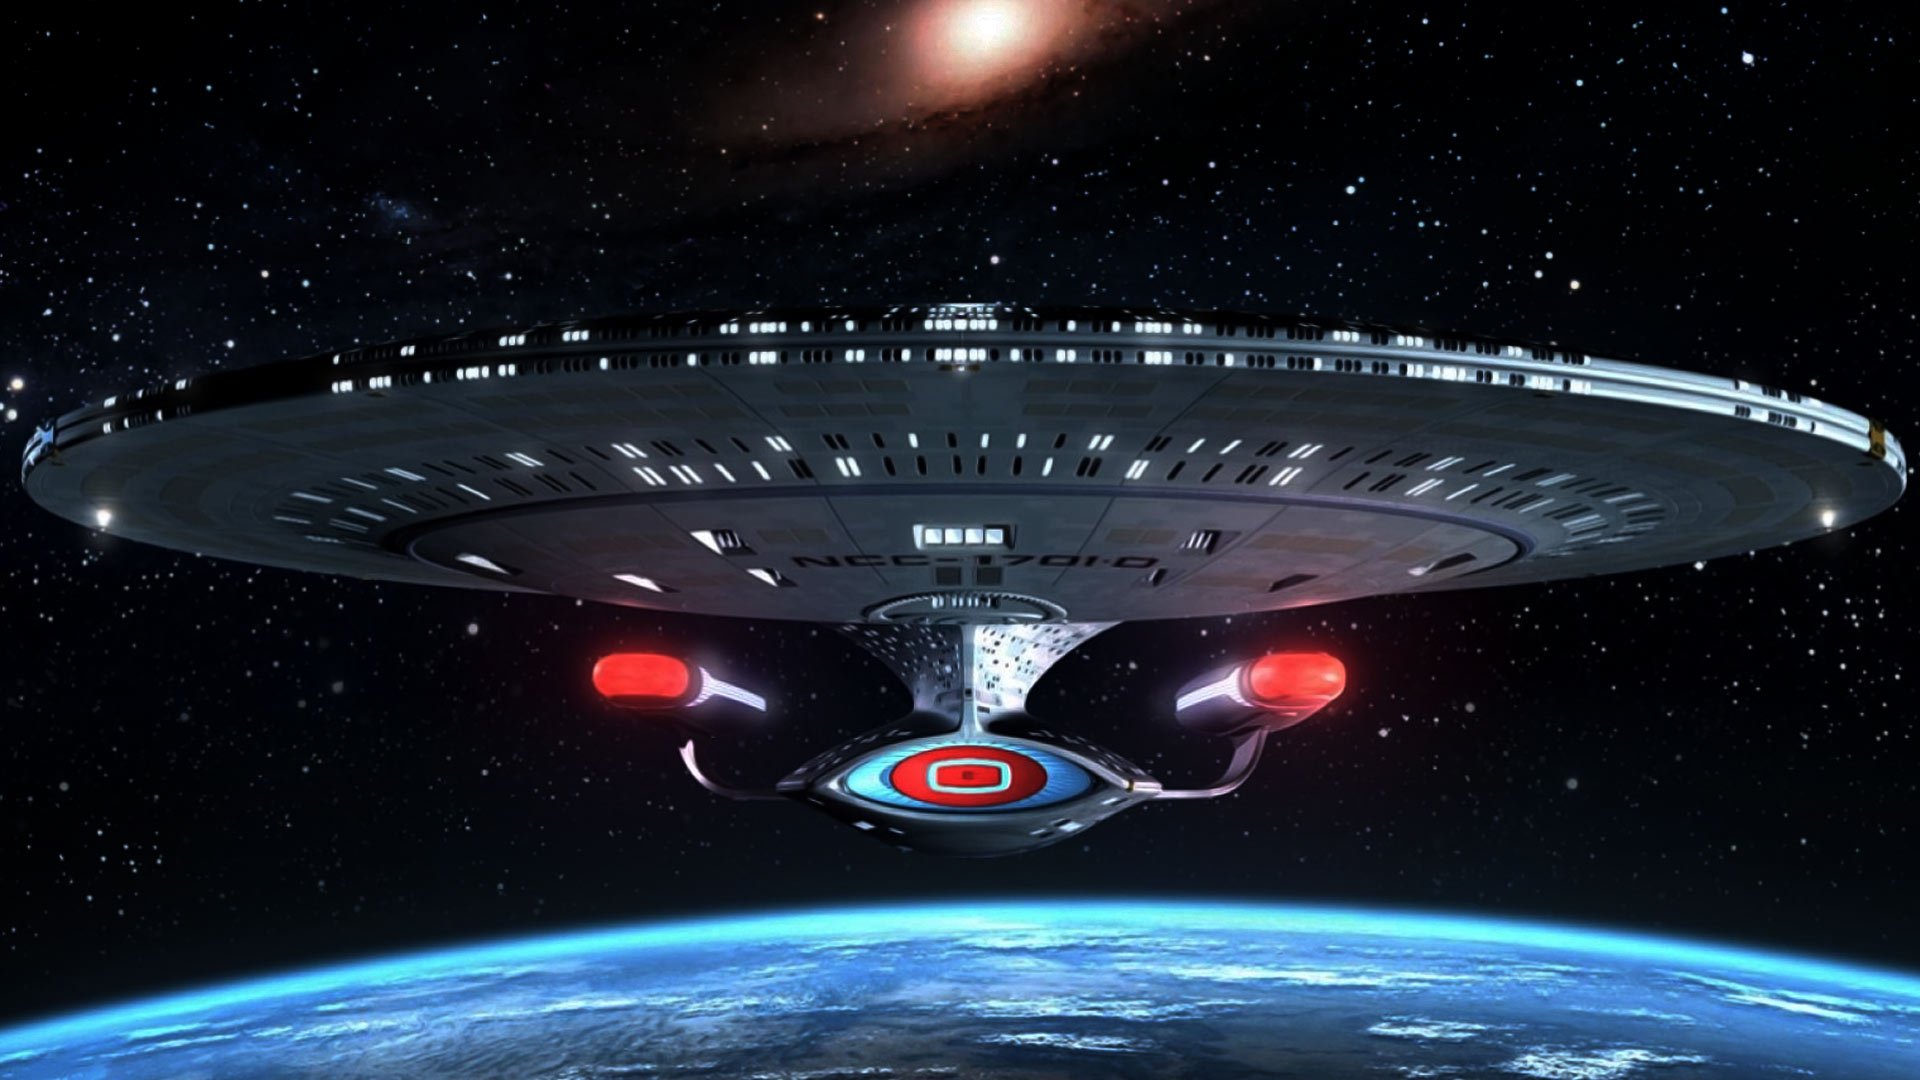 Star Trek HD Wallpaper | Background Image | 1920x1080 | ID:76401